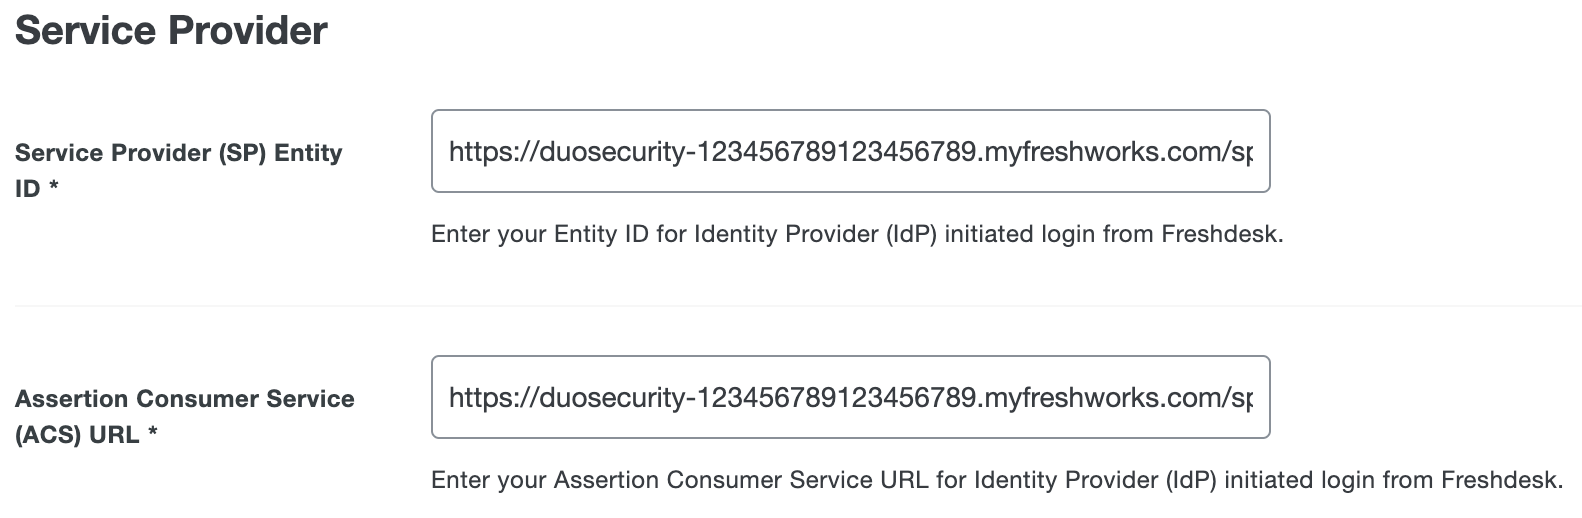 Duo Freshdesk SP Entity ID and ACS URL